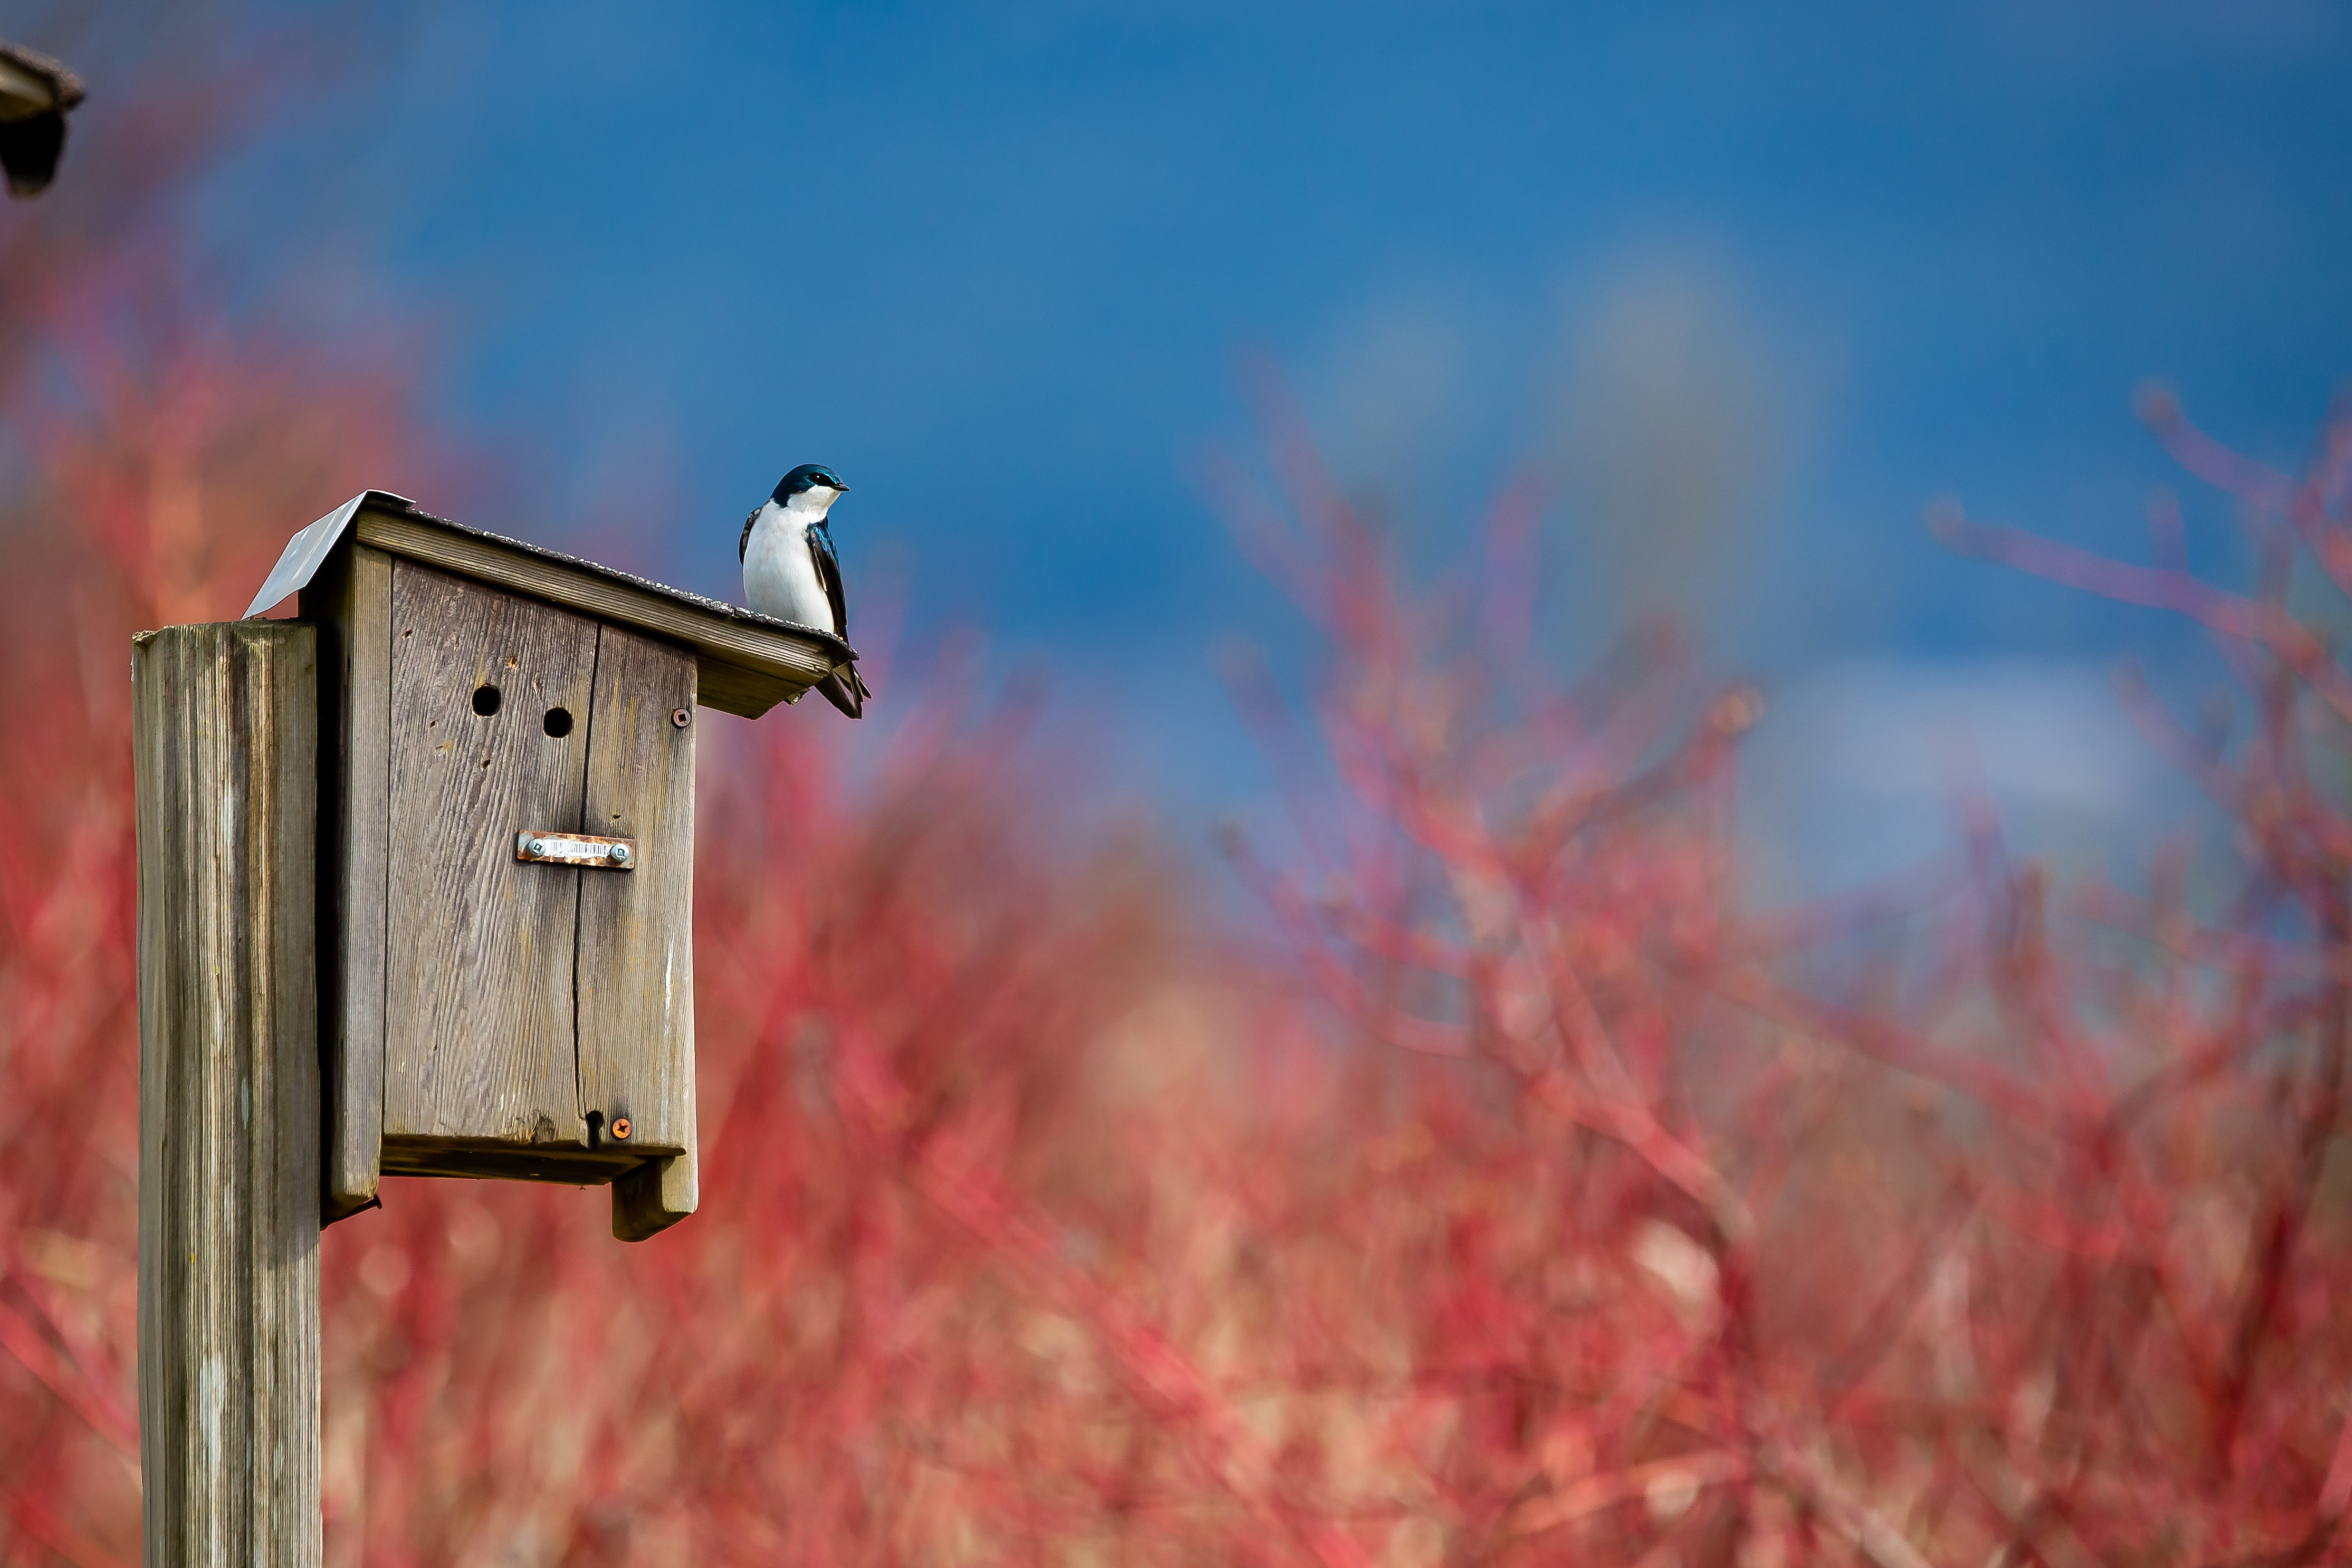 Installer un nichoir dans son jardin pour oiseaux - Abri oiseau pas Cher -  PRÊT A JARDINER